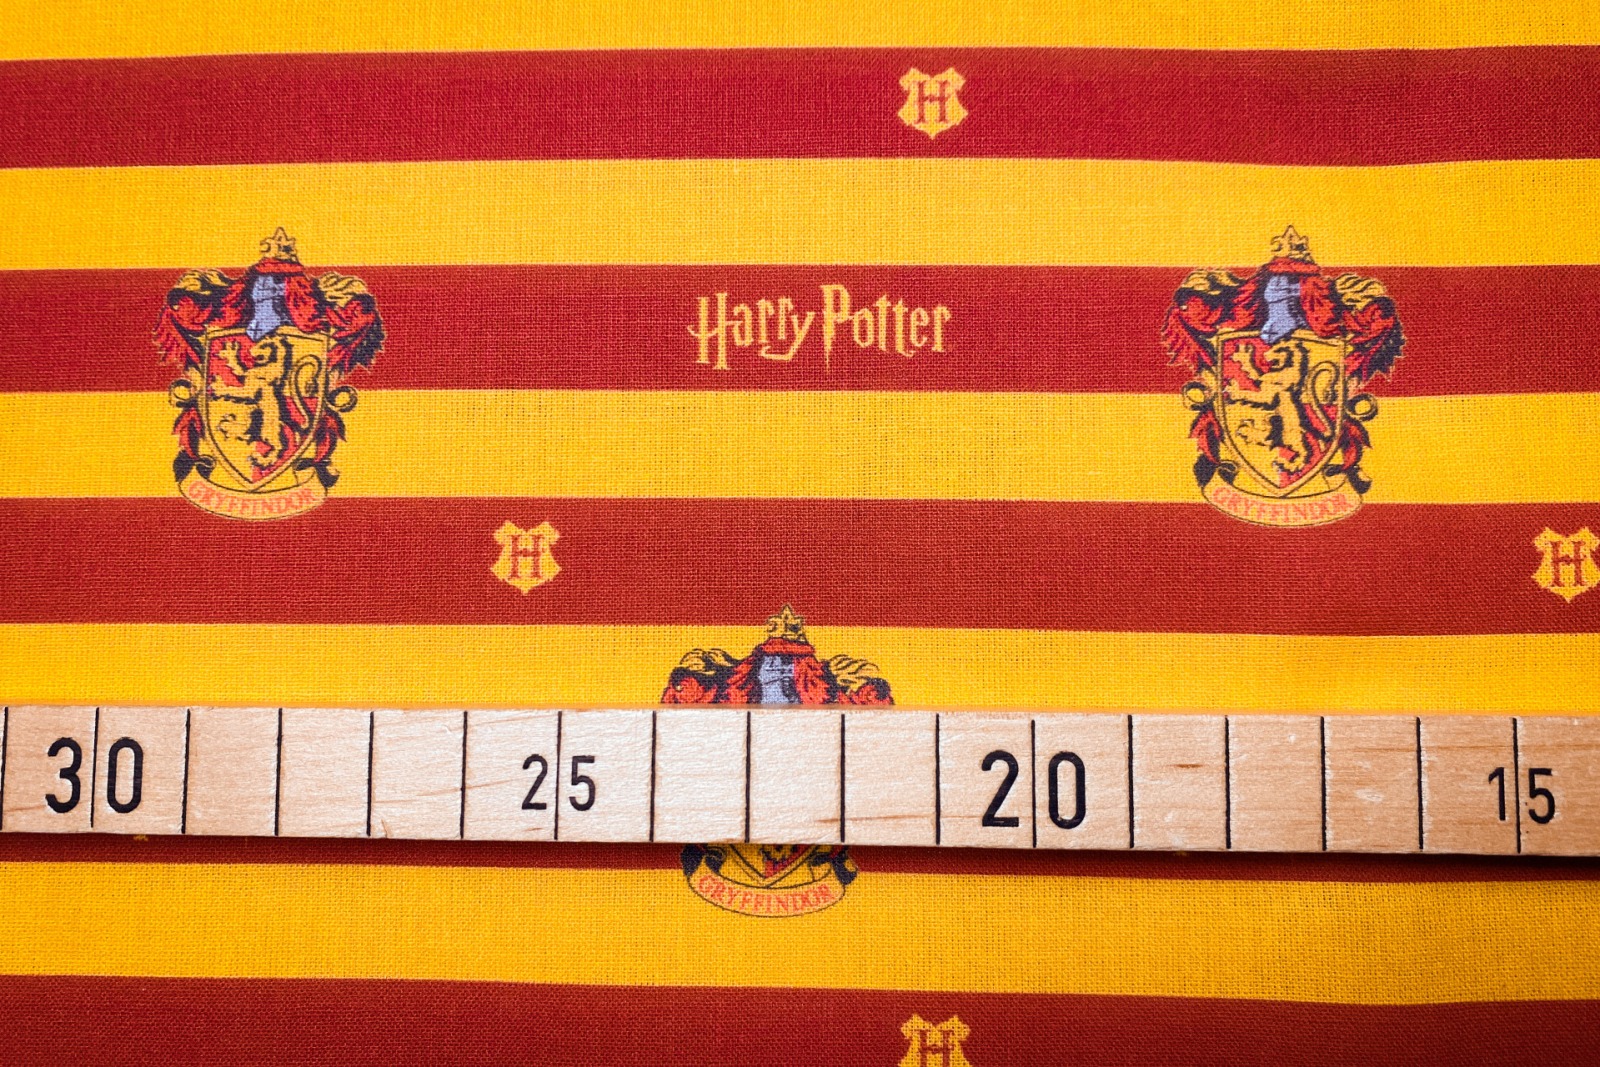 Harry Potter Stoff - Hausfarben Gryffindor - rot und gelb gestreift - 1300 EUR/m - 100 Baumwolle -